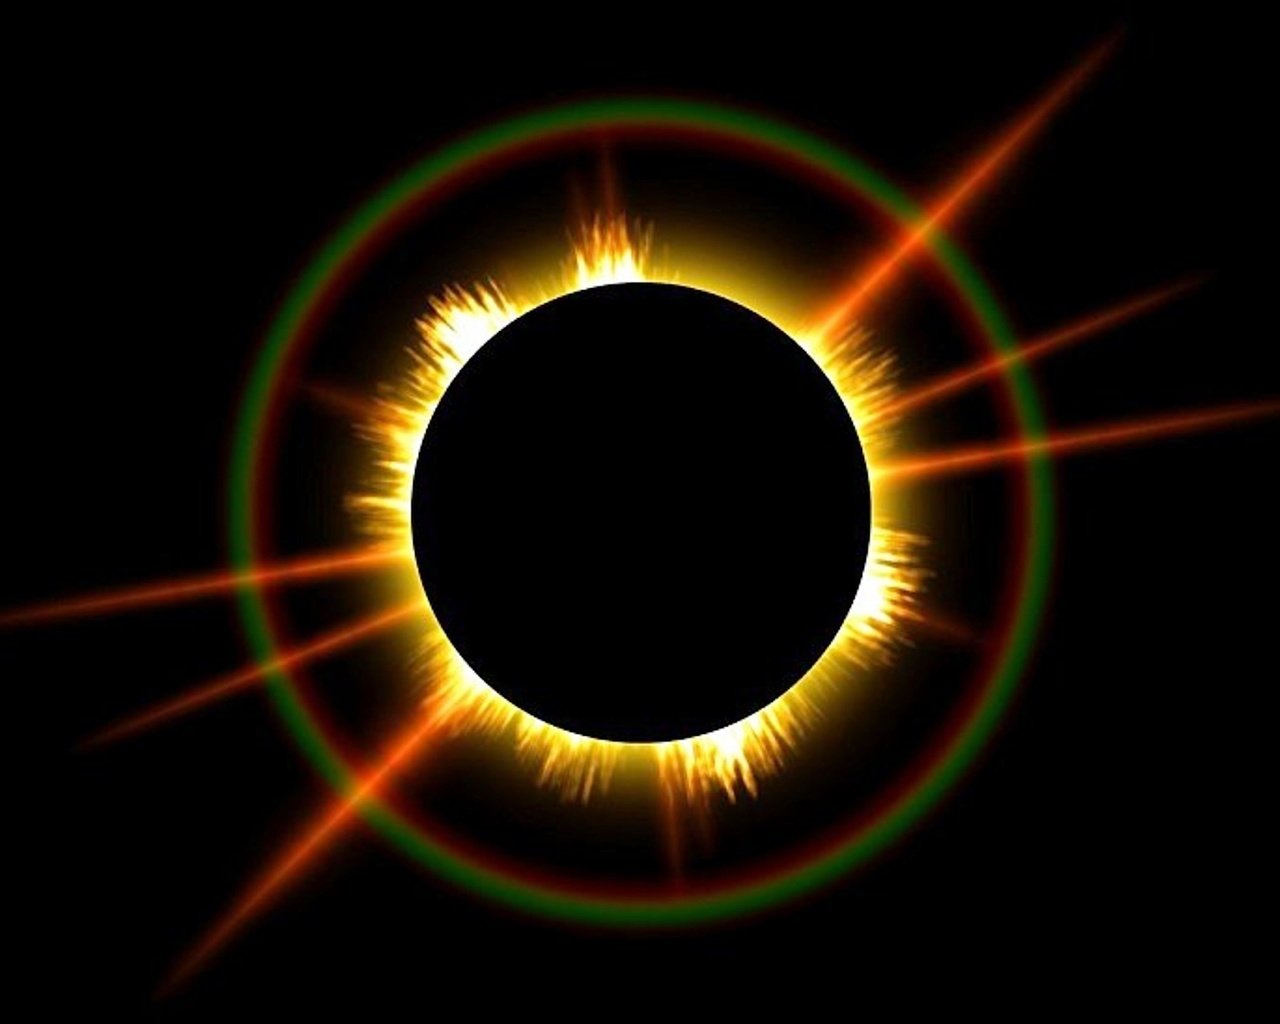 2 солнечная корона. Солнечное затмение Солнечная корона. "Ring of Fire" Solar Eclipse. Полное солнечное затмение Солнечная корона. Солнце на черном фоне.